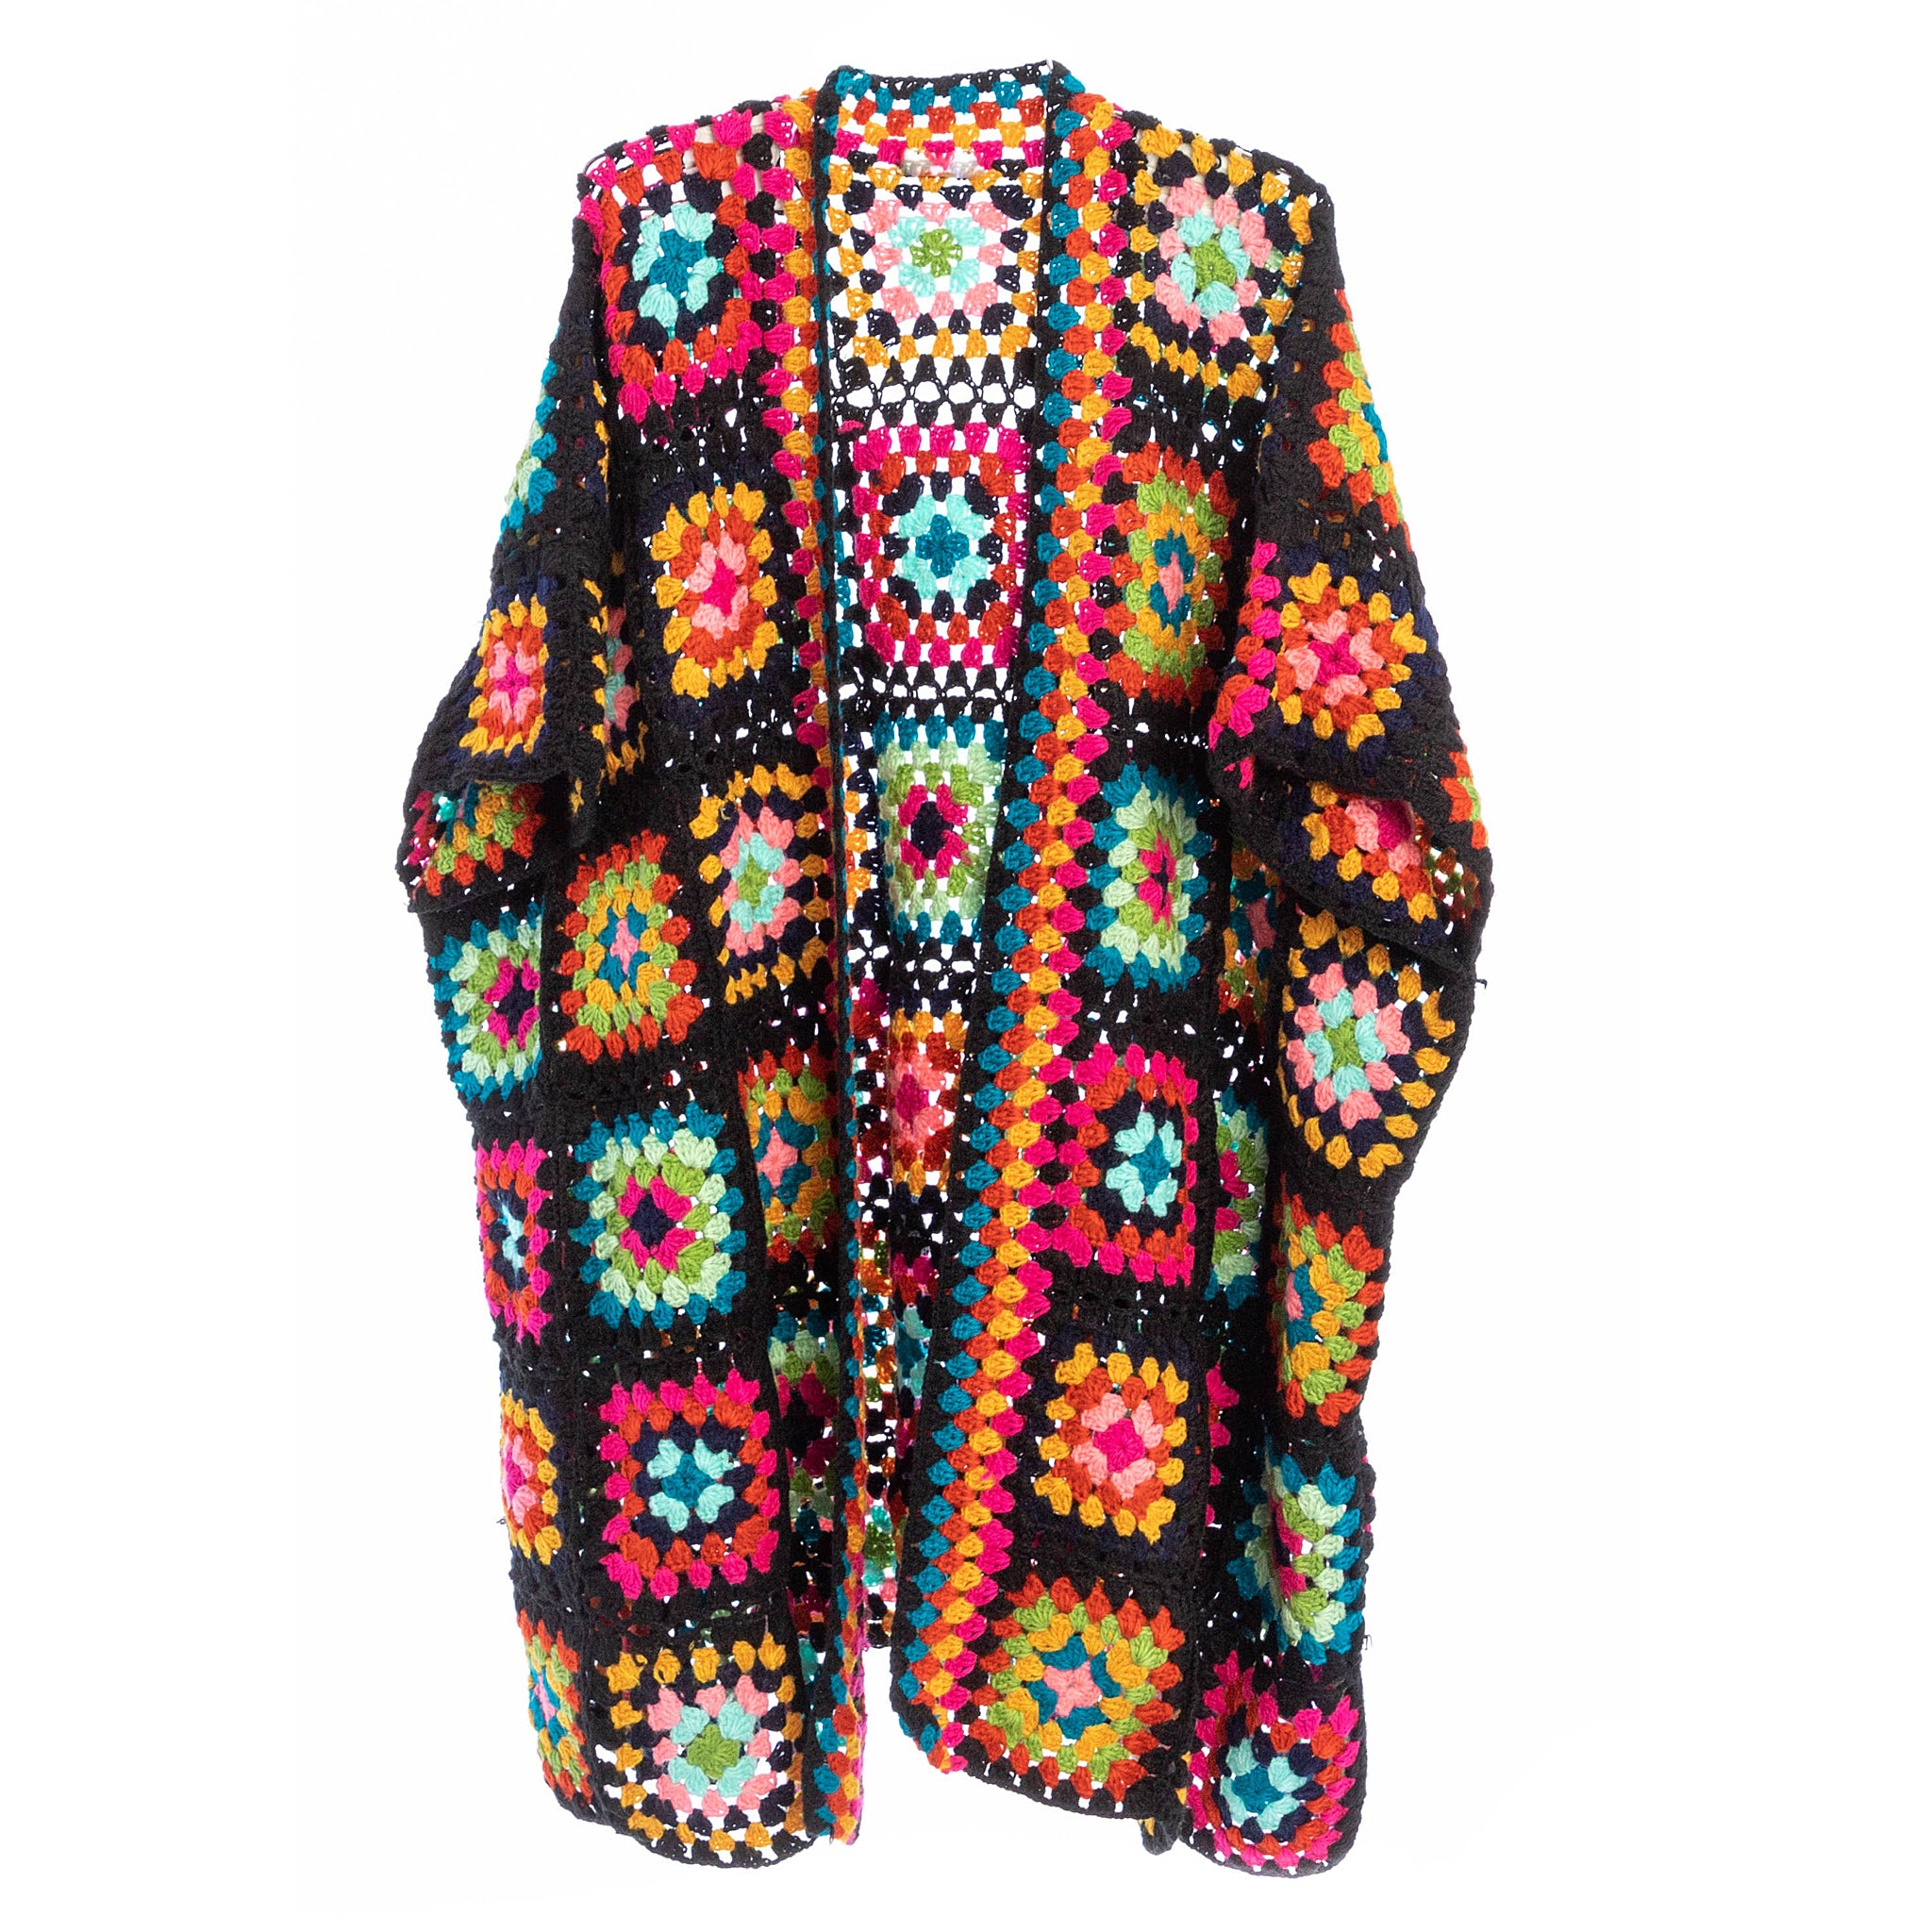 Saachi Noni Granny Square Crocheted Sweater in Black Multicolor